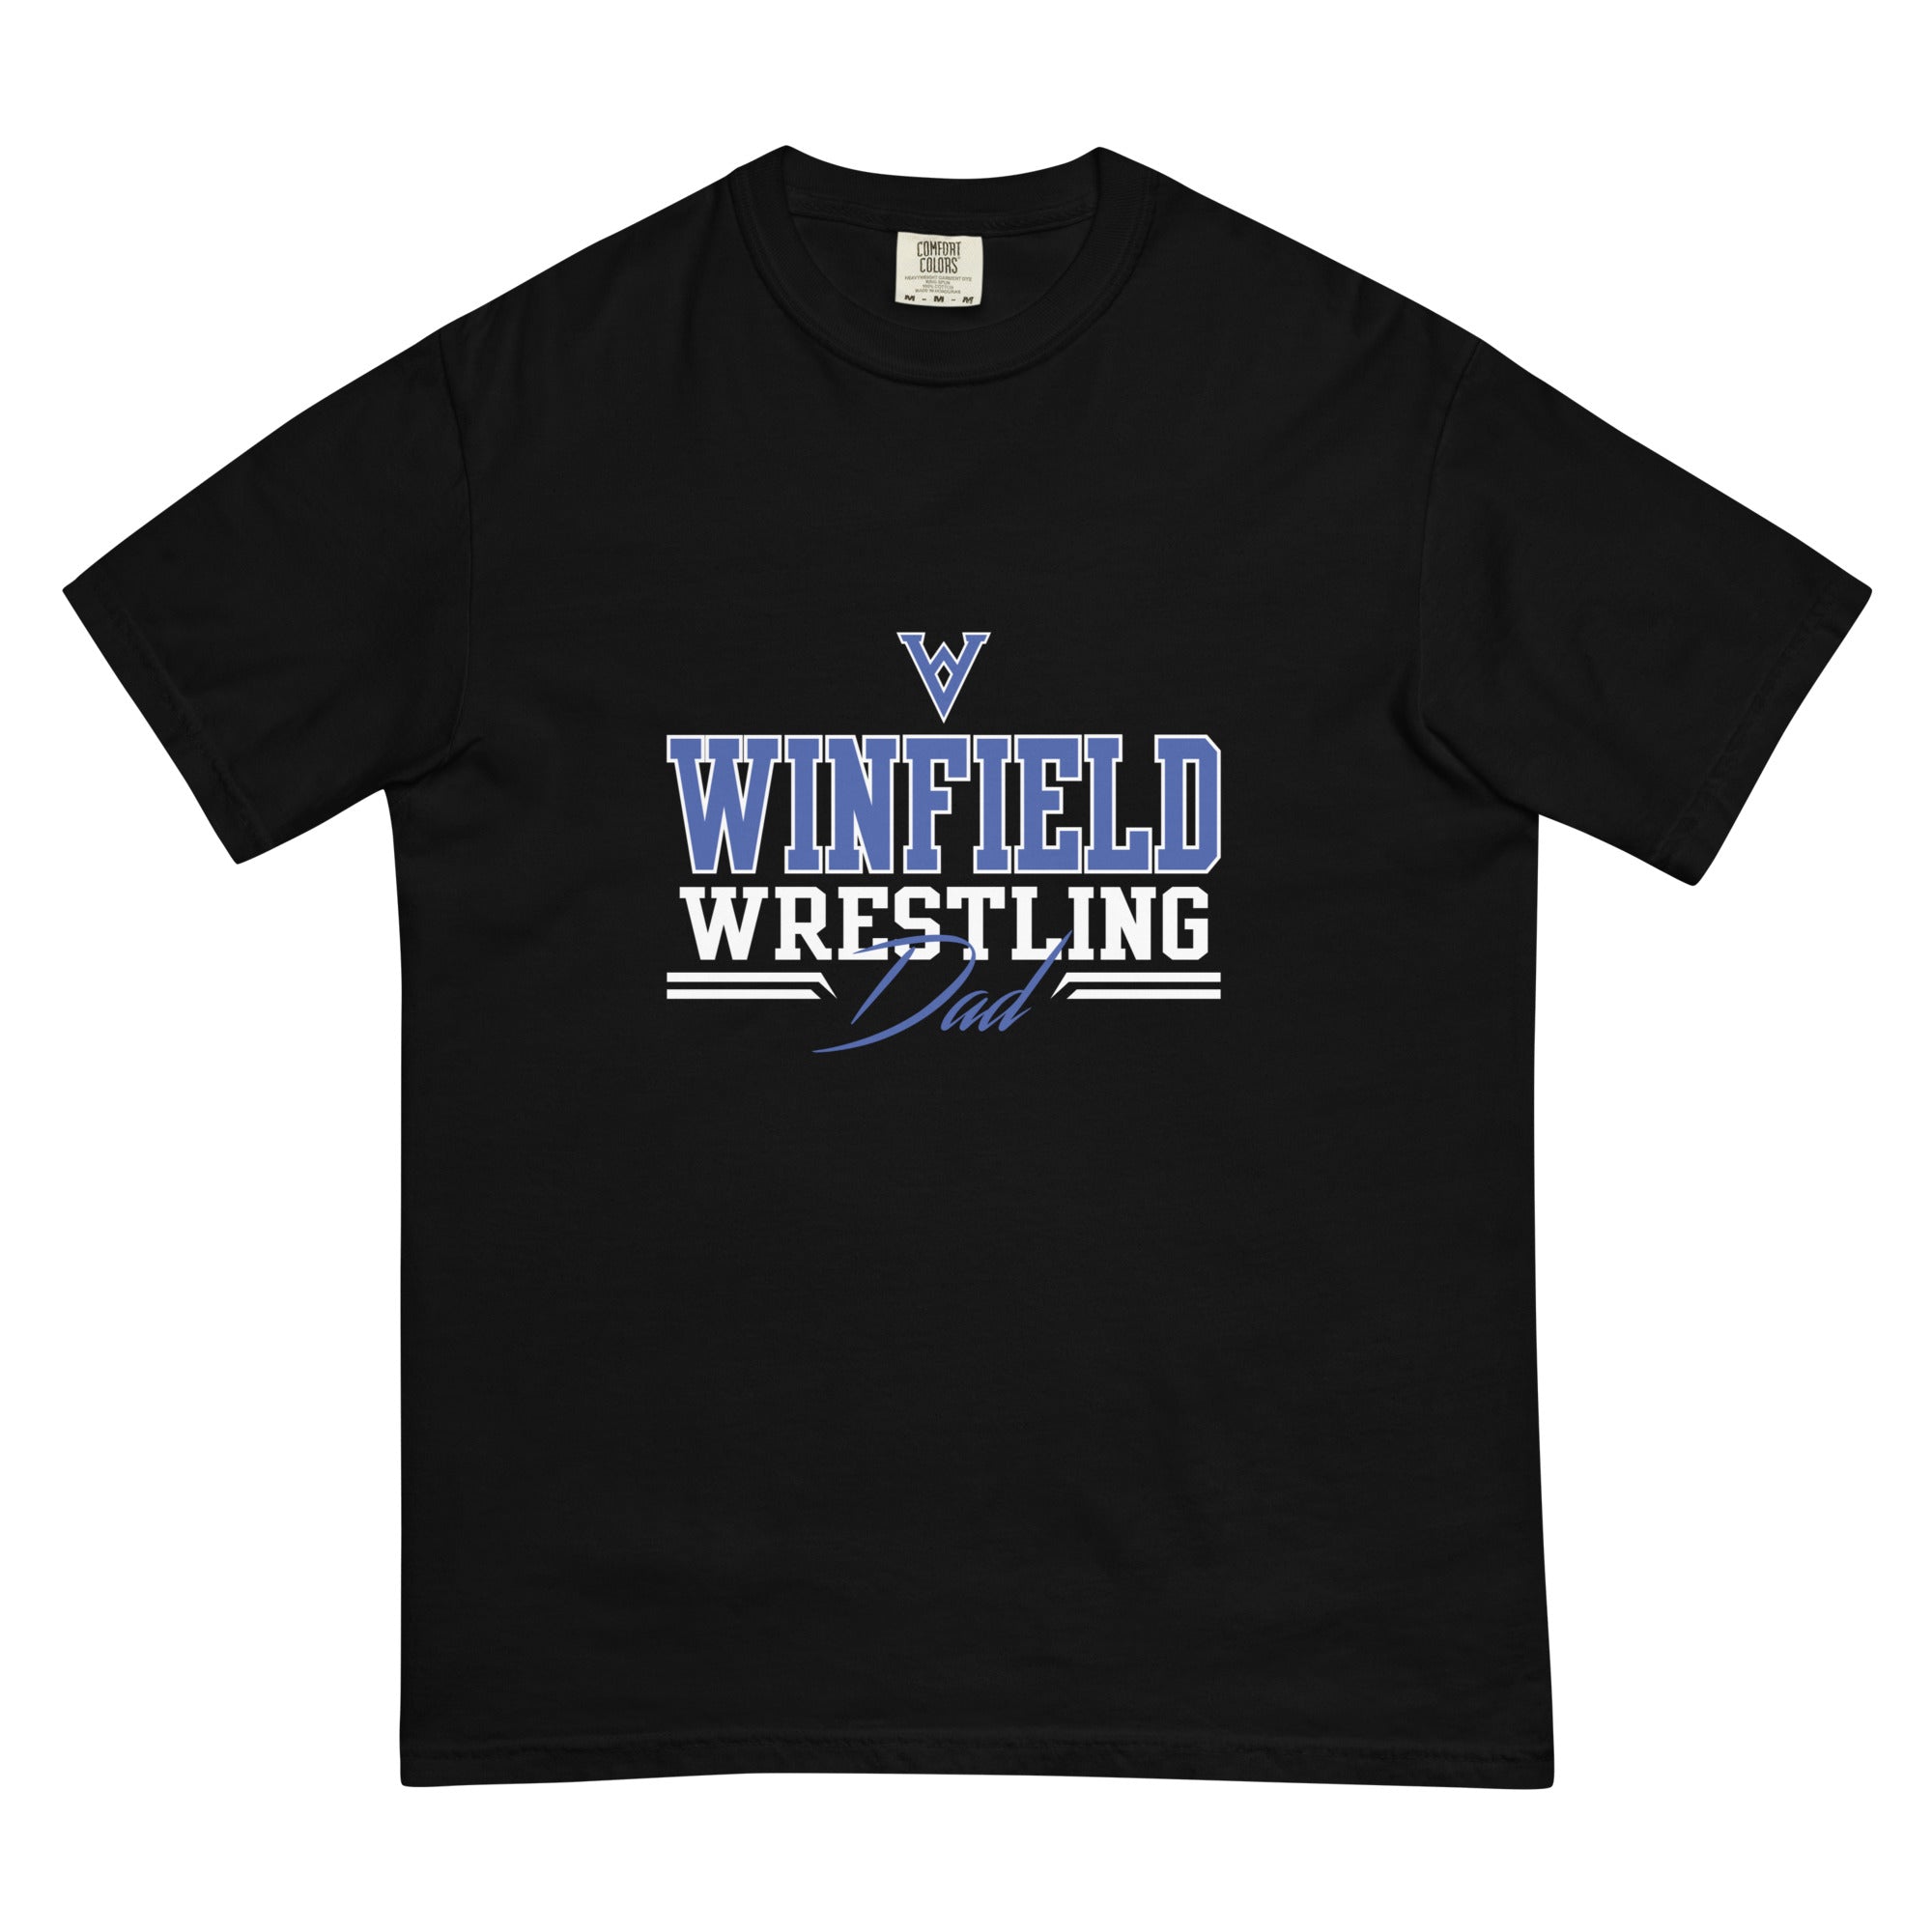 Wildcat Wrestling Club (Louisburg) Men’s garment-dyed heavyweight t-shirt